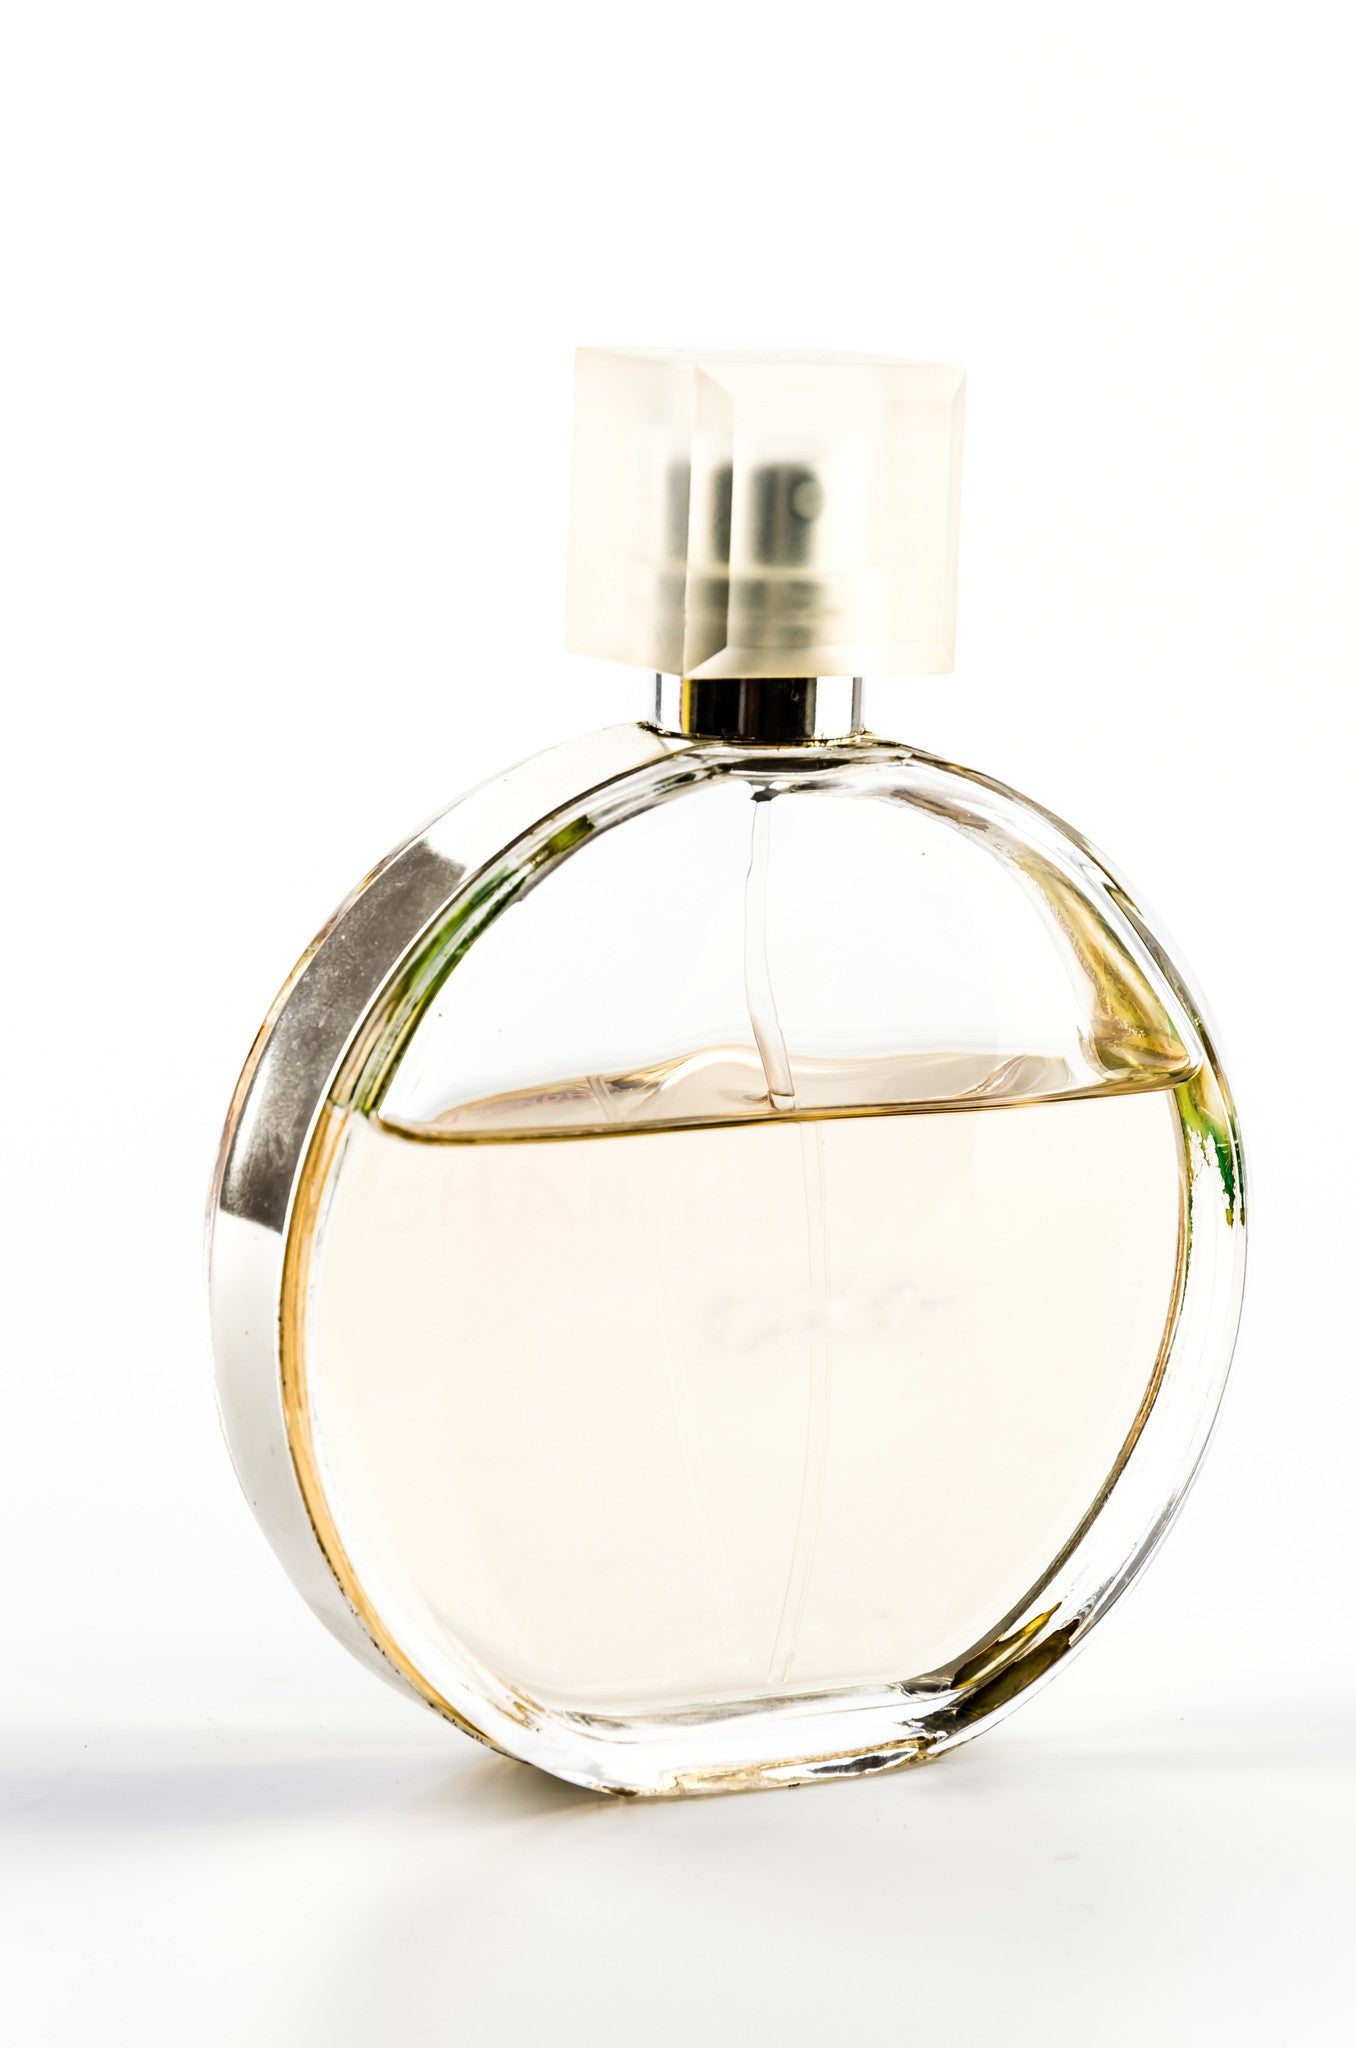 Pheromones Perfume for women 1.7FL ~ Long LASTING 12 hours feromonas